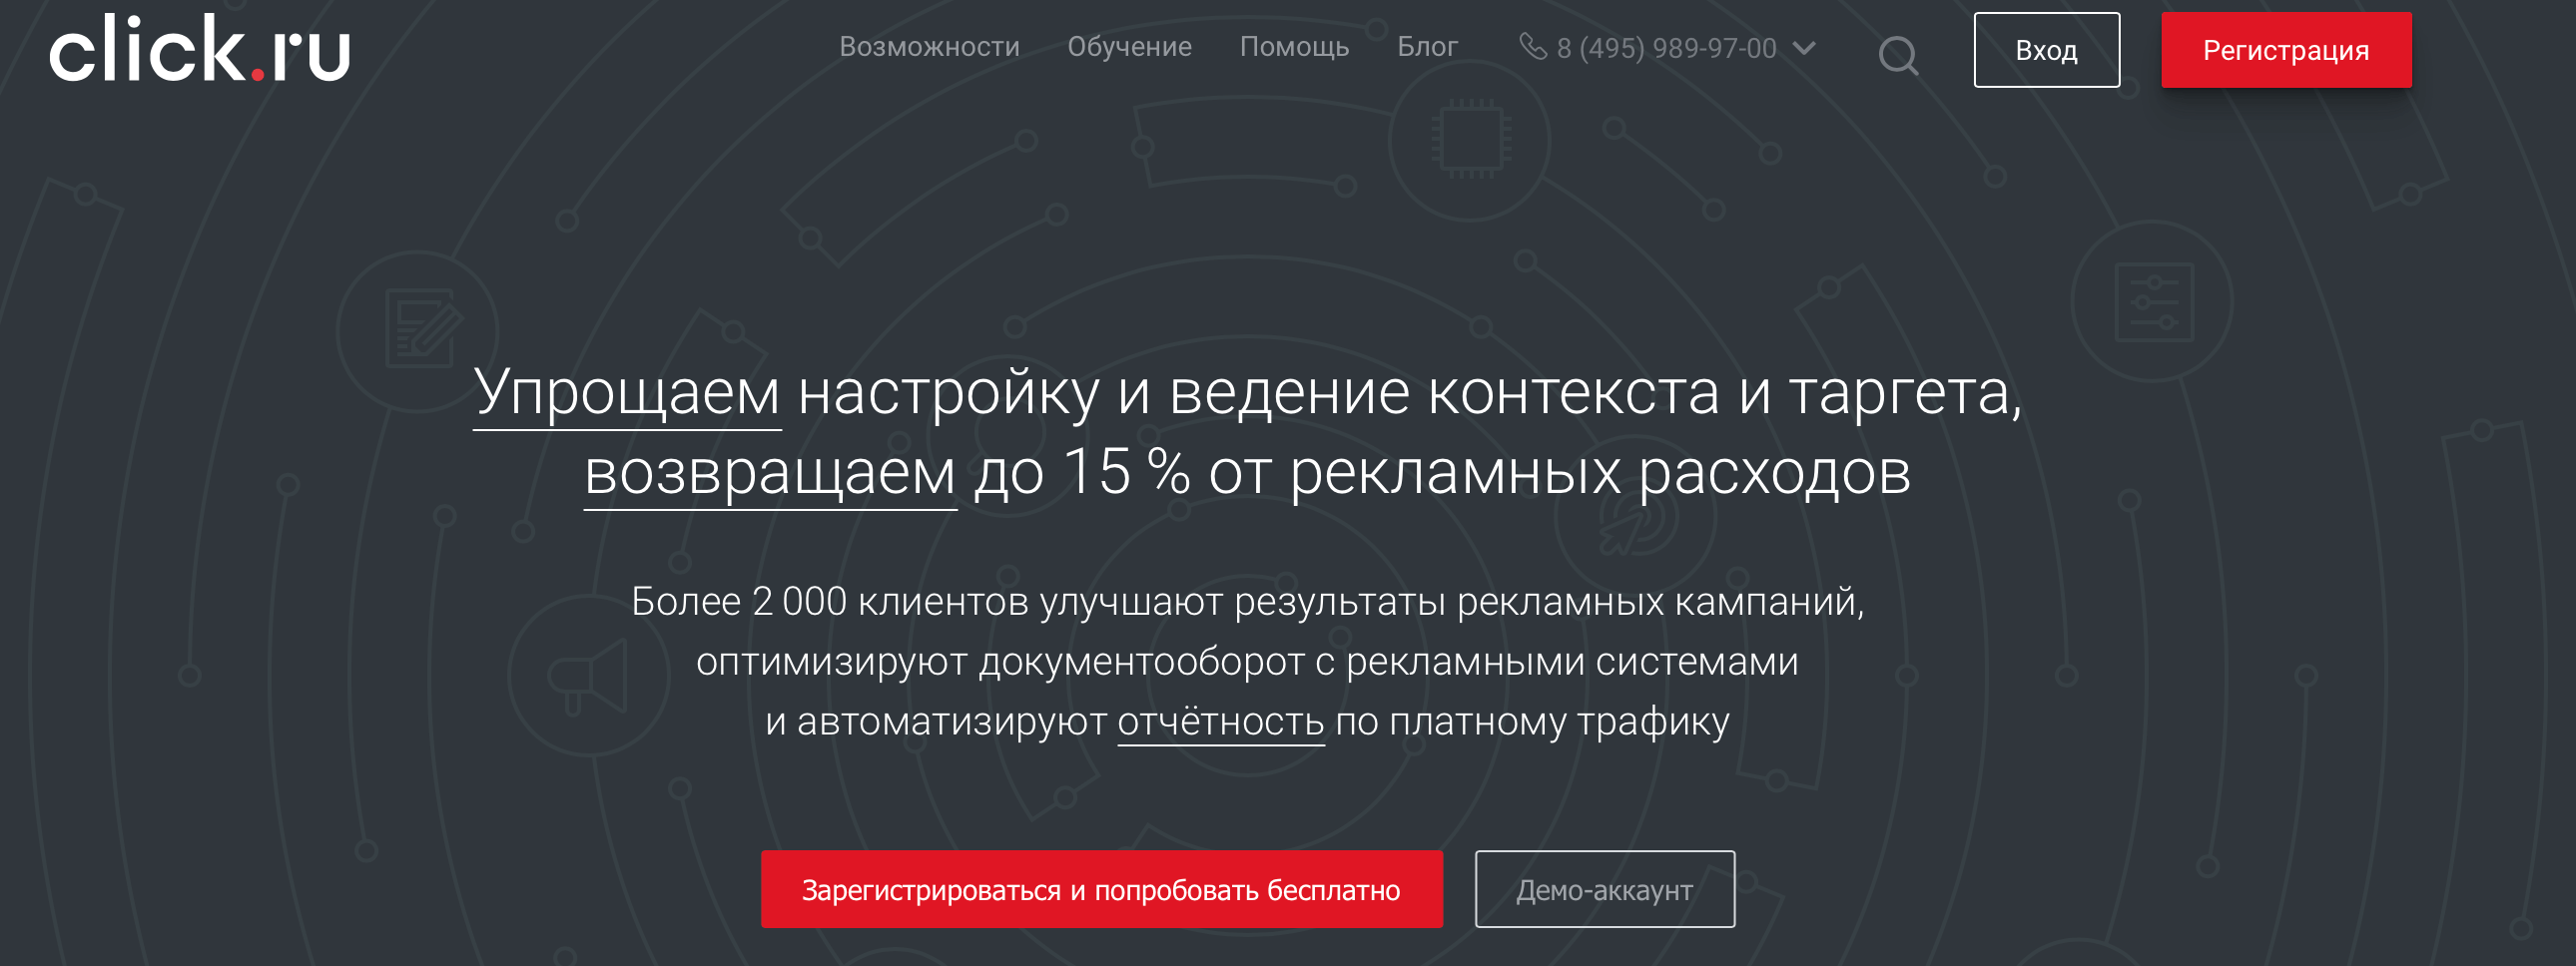 Сайт Click.ru и Яндекс